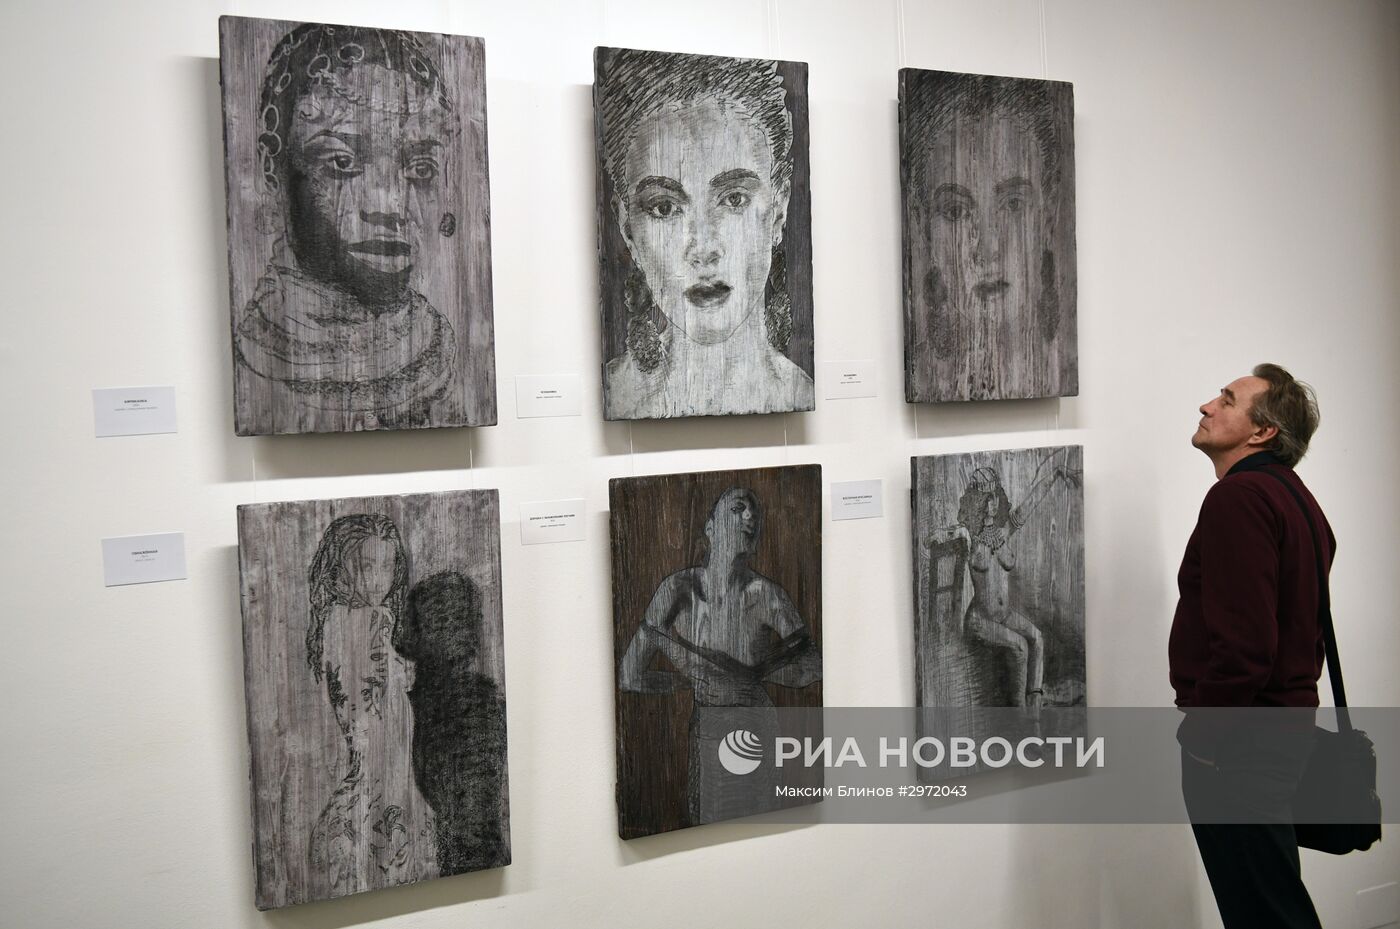 Открытие выставки Стаса Намина "Откровенно"